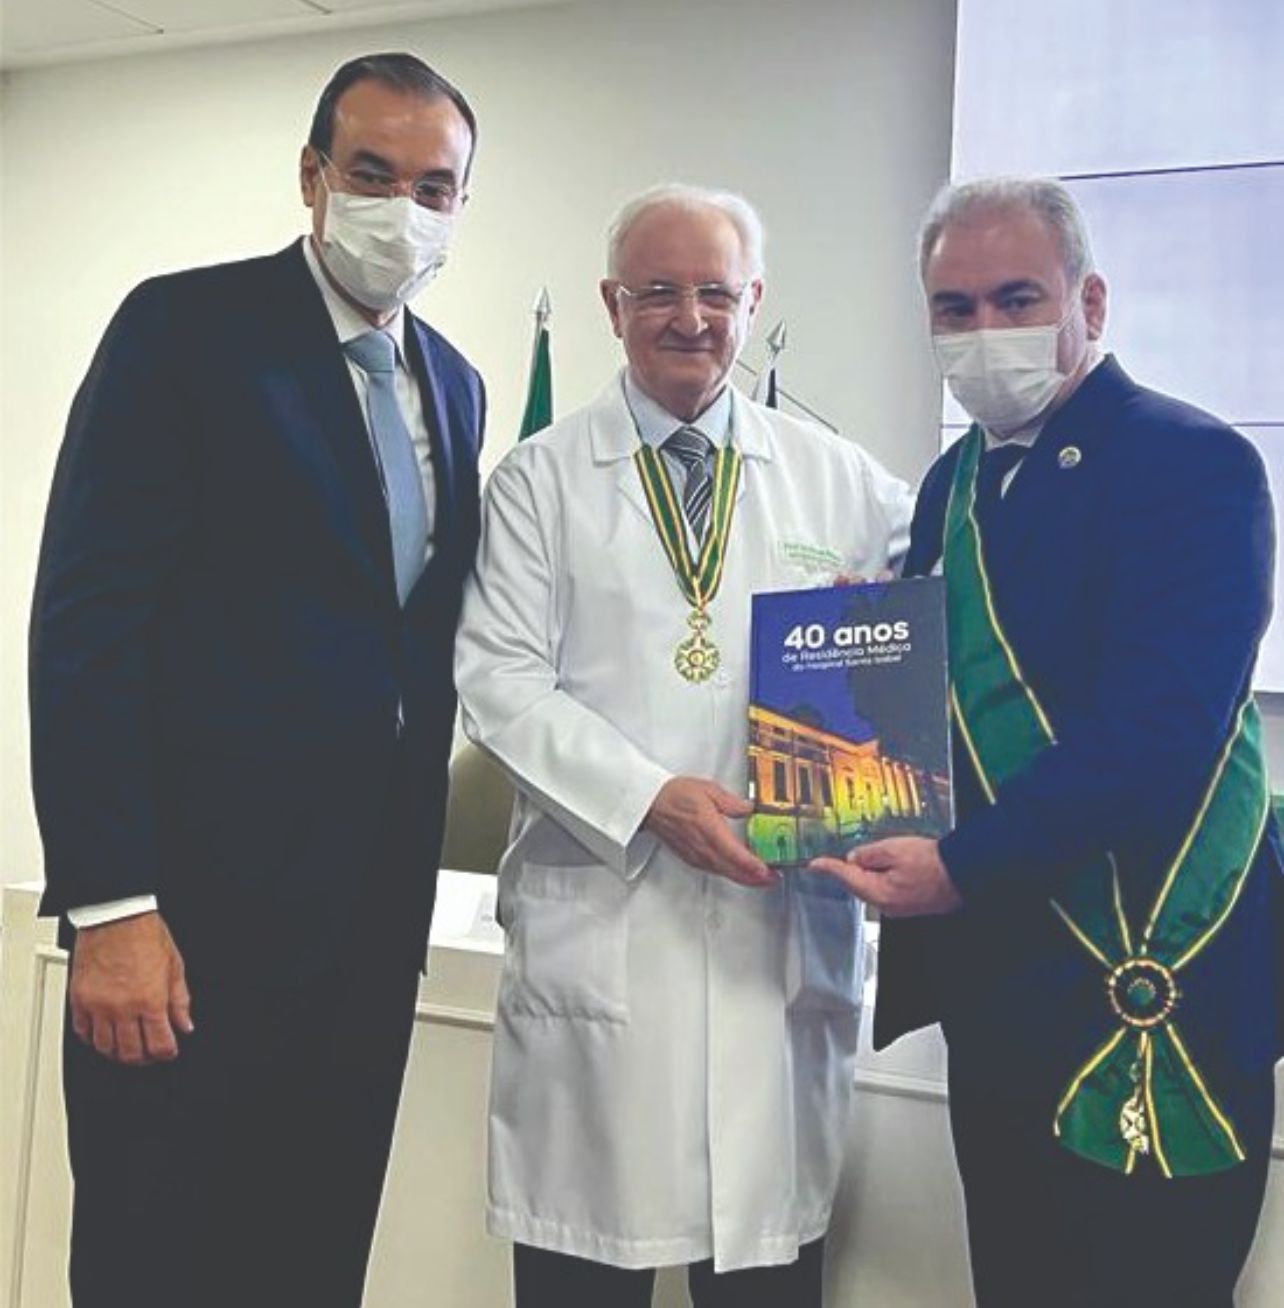 Diretor de Ensino e Pesquisa do Hospital Santa Izabel recebe principal honraria dedicada à categoria médica no Brasil 